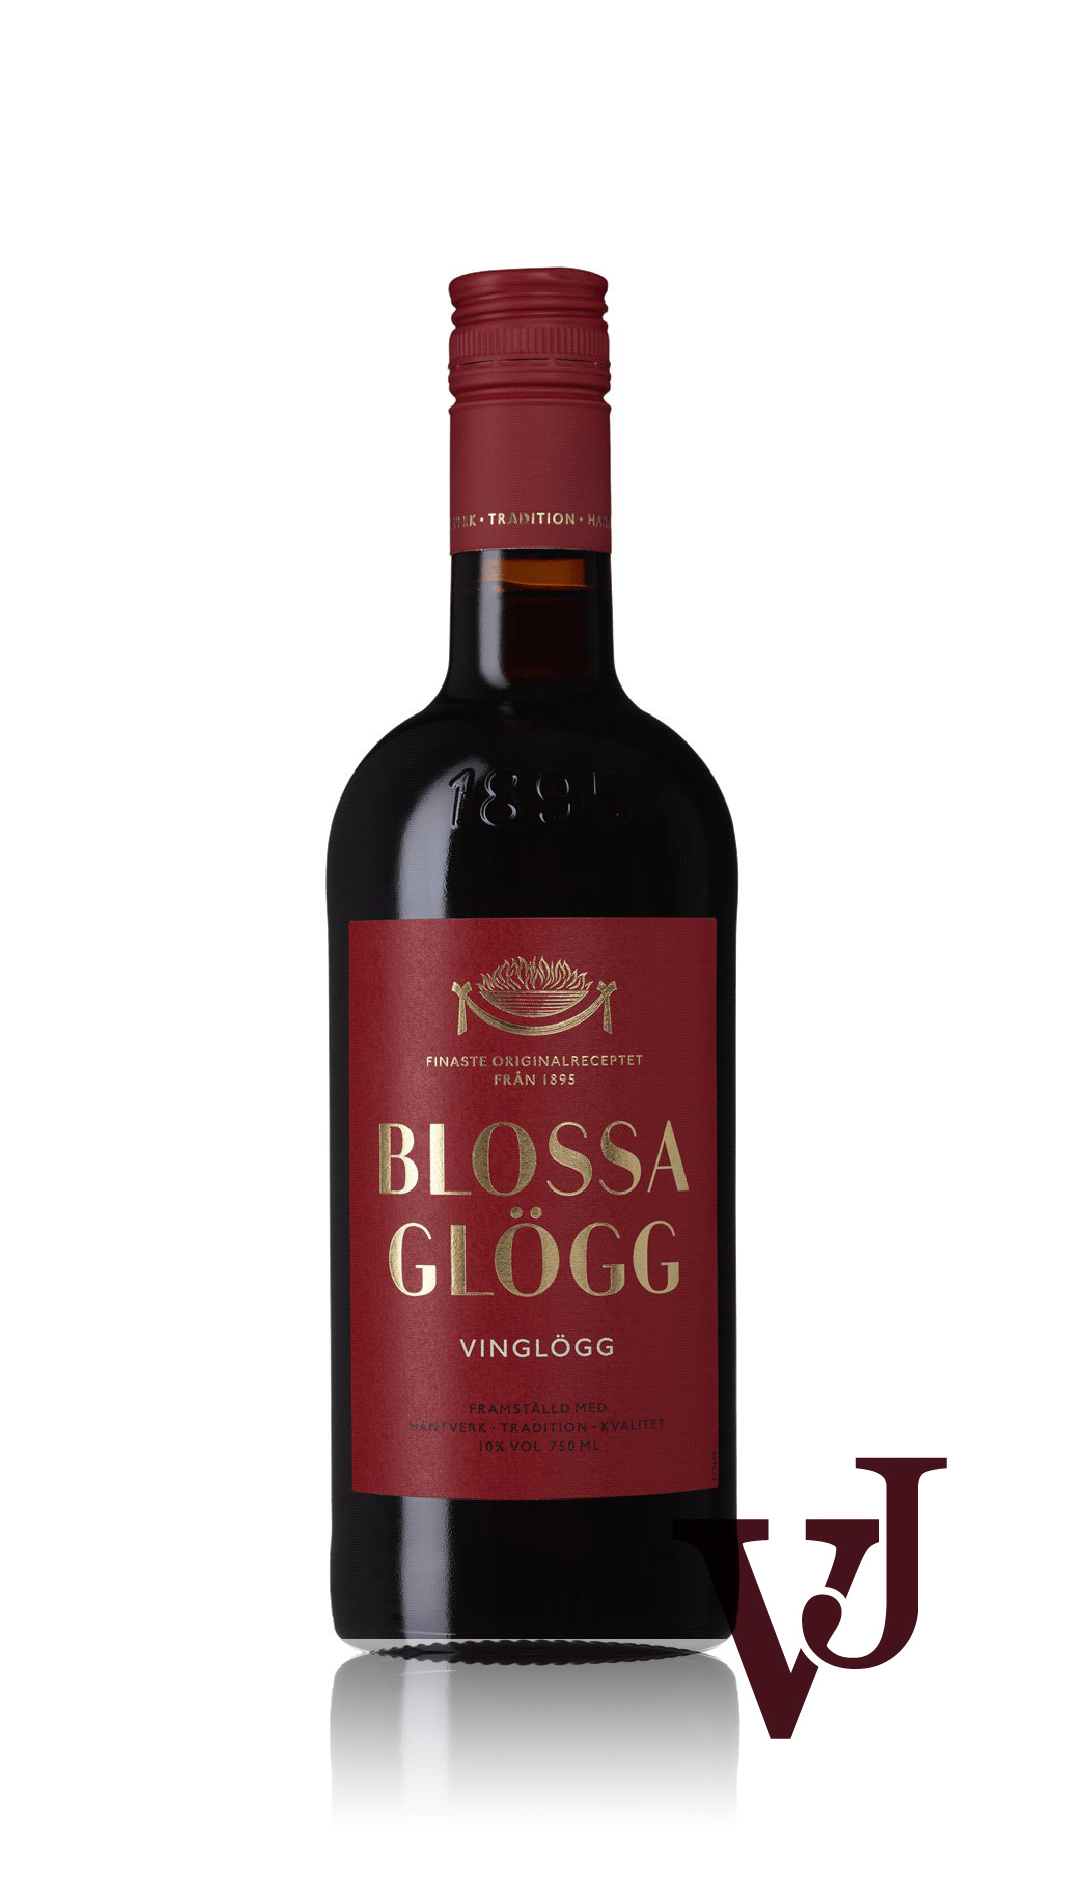 Övrigt vin - Blossa Vinglögg artikel nummer 400001 från producenten Altia från området Varumärketärinternationellt